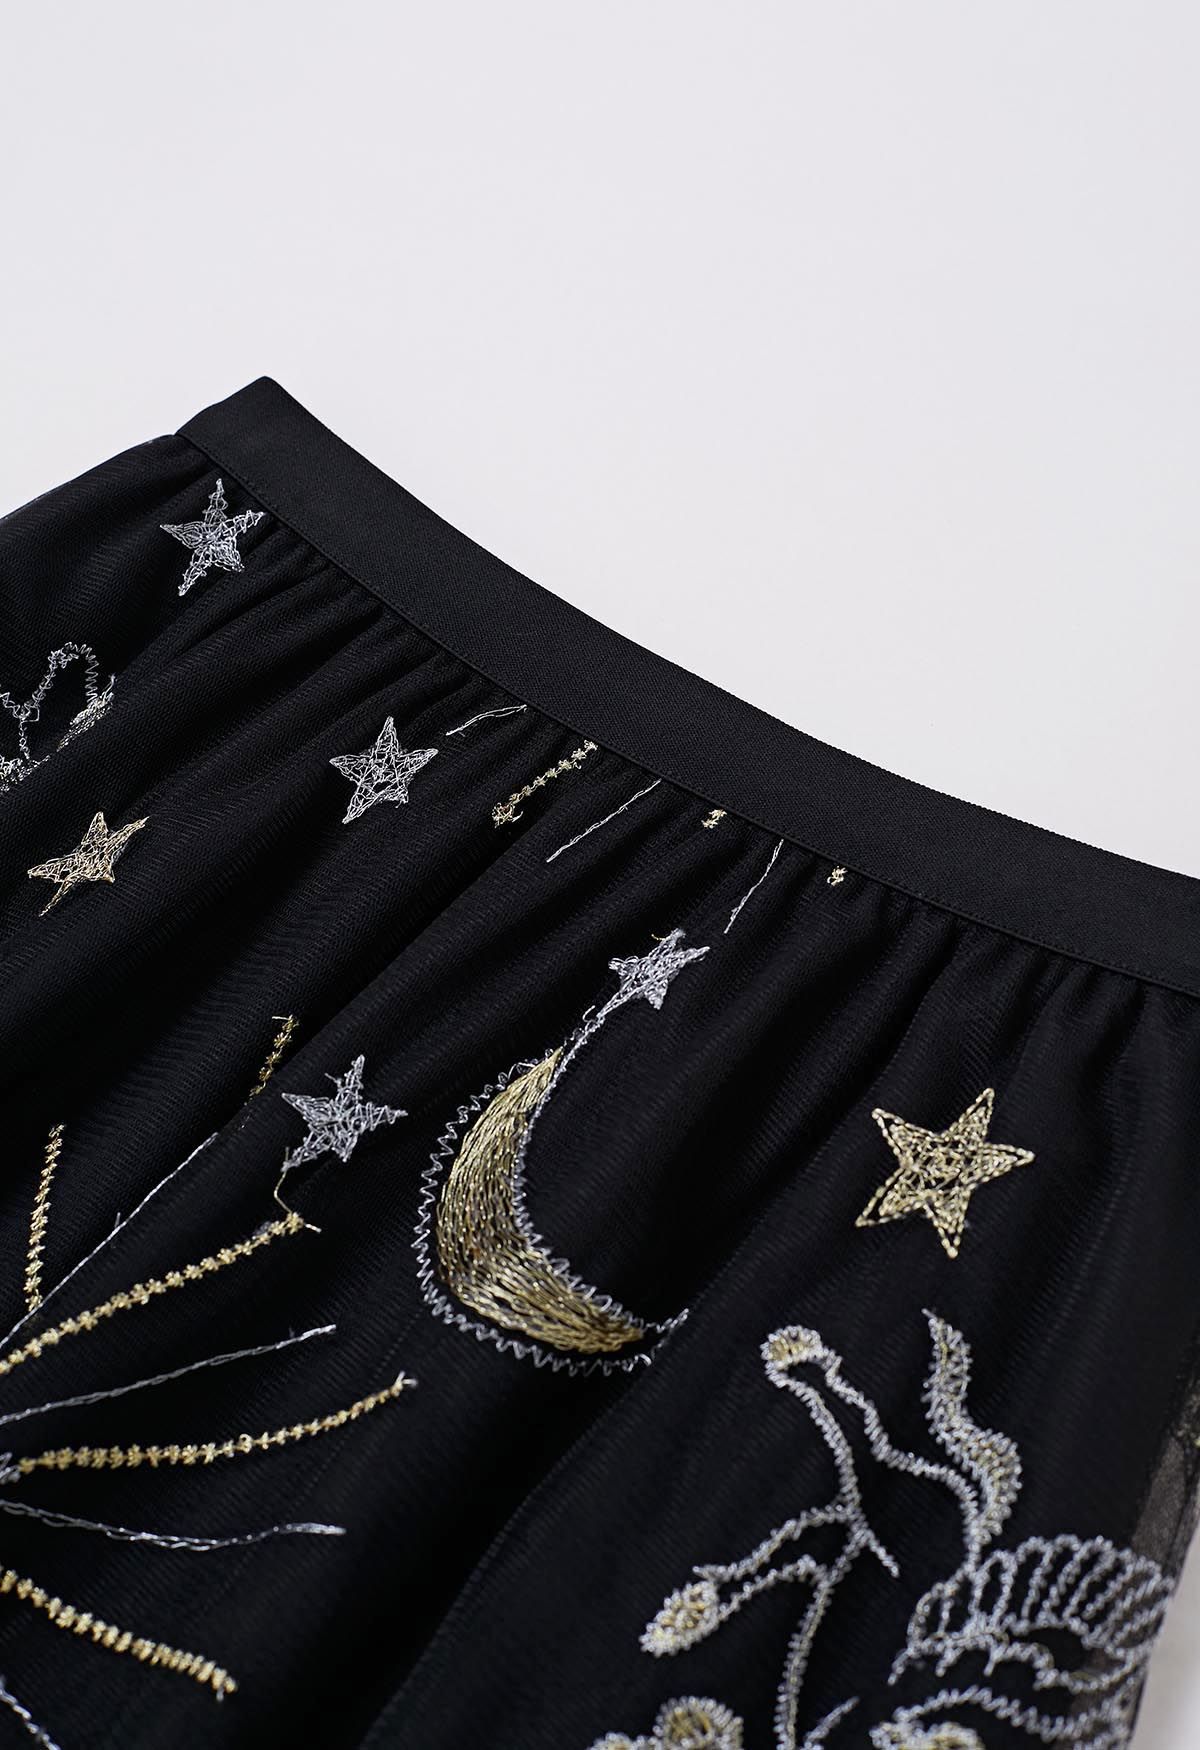 تنورة من قماش التول الشبكي المطرز بالقمر والنجمة الغامضة باللون الأسود